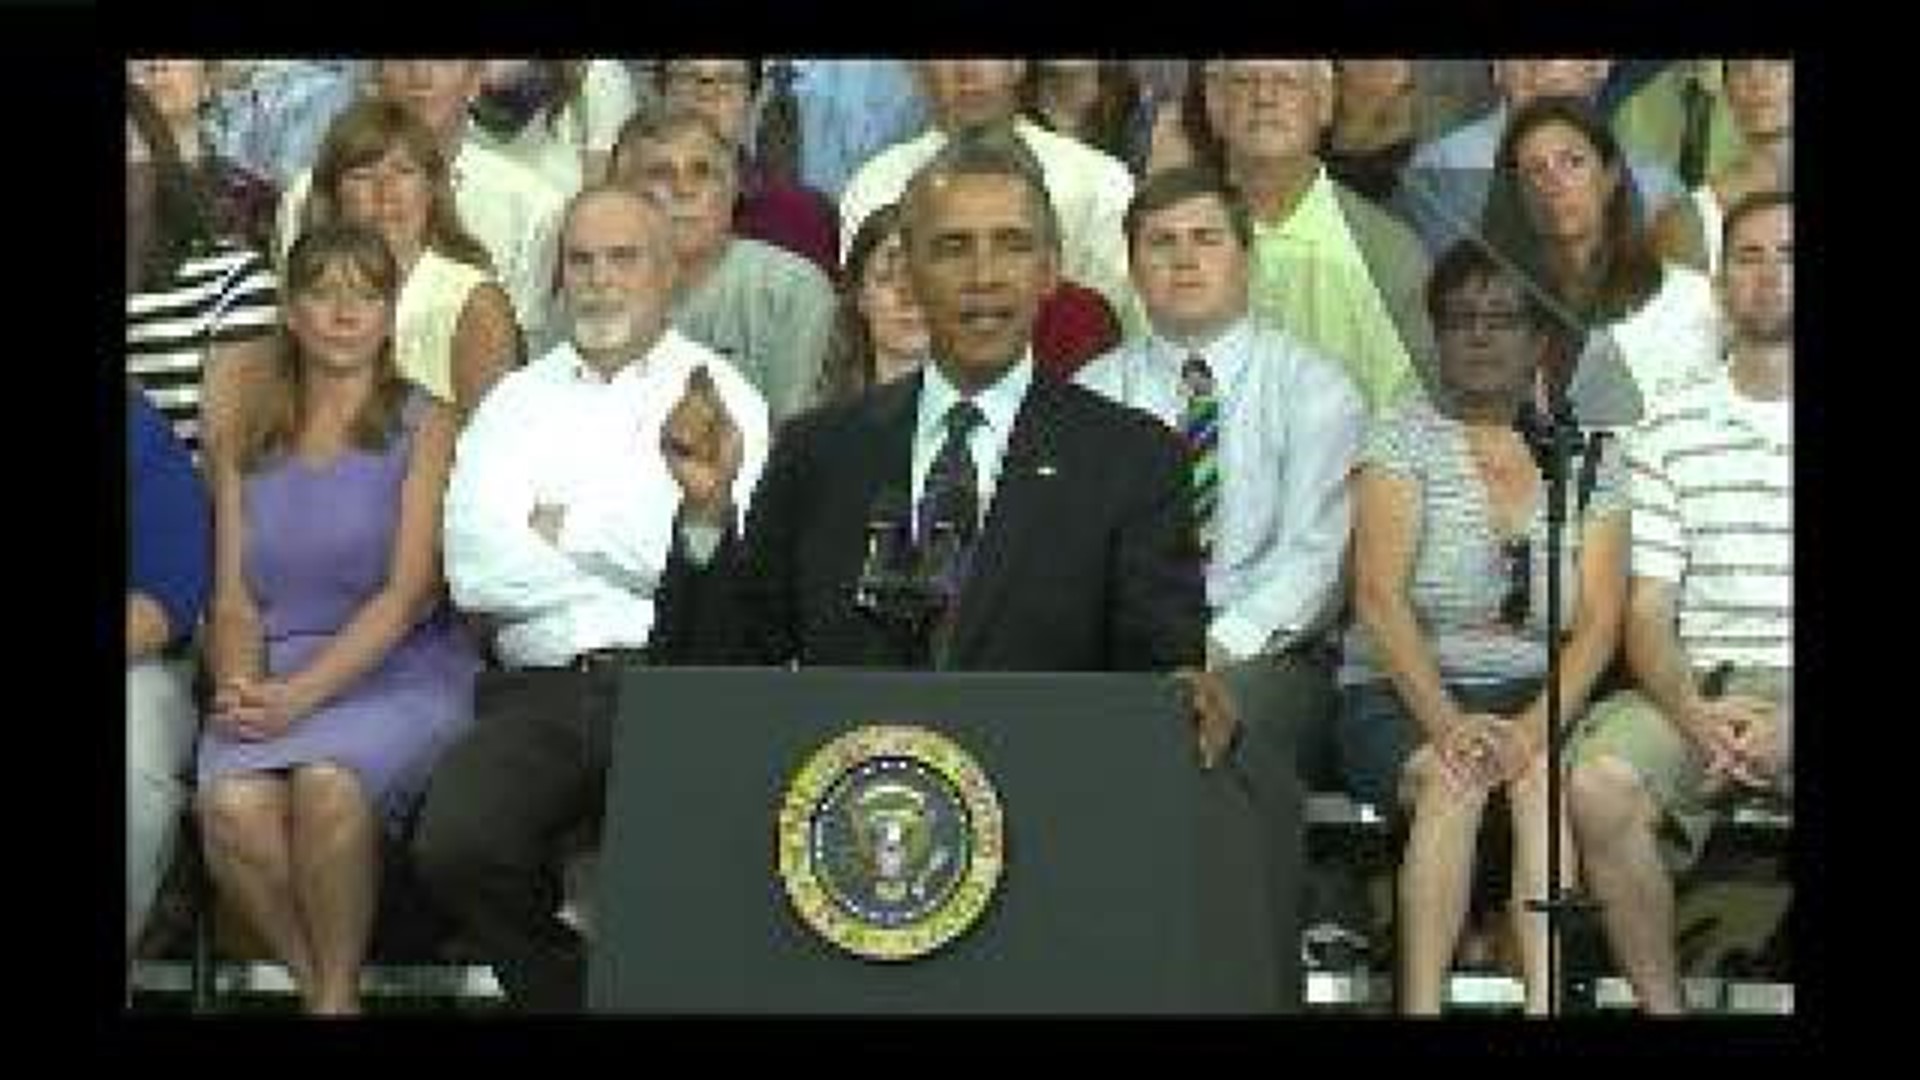 President Obama speaks in Galesburg - clip 7 of 7